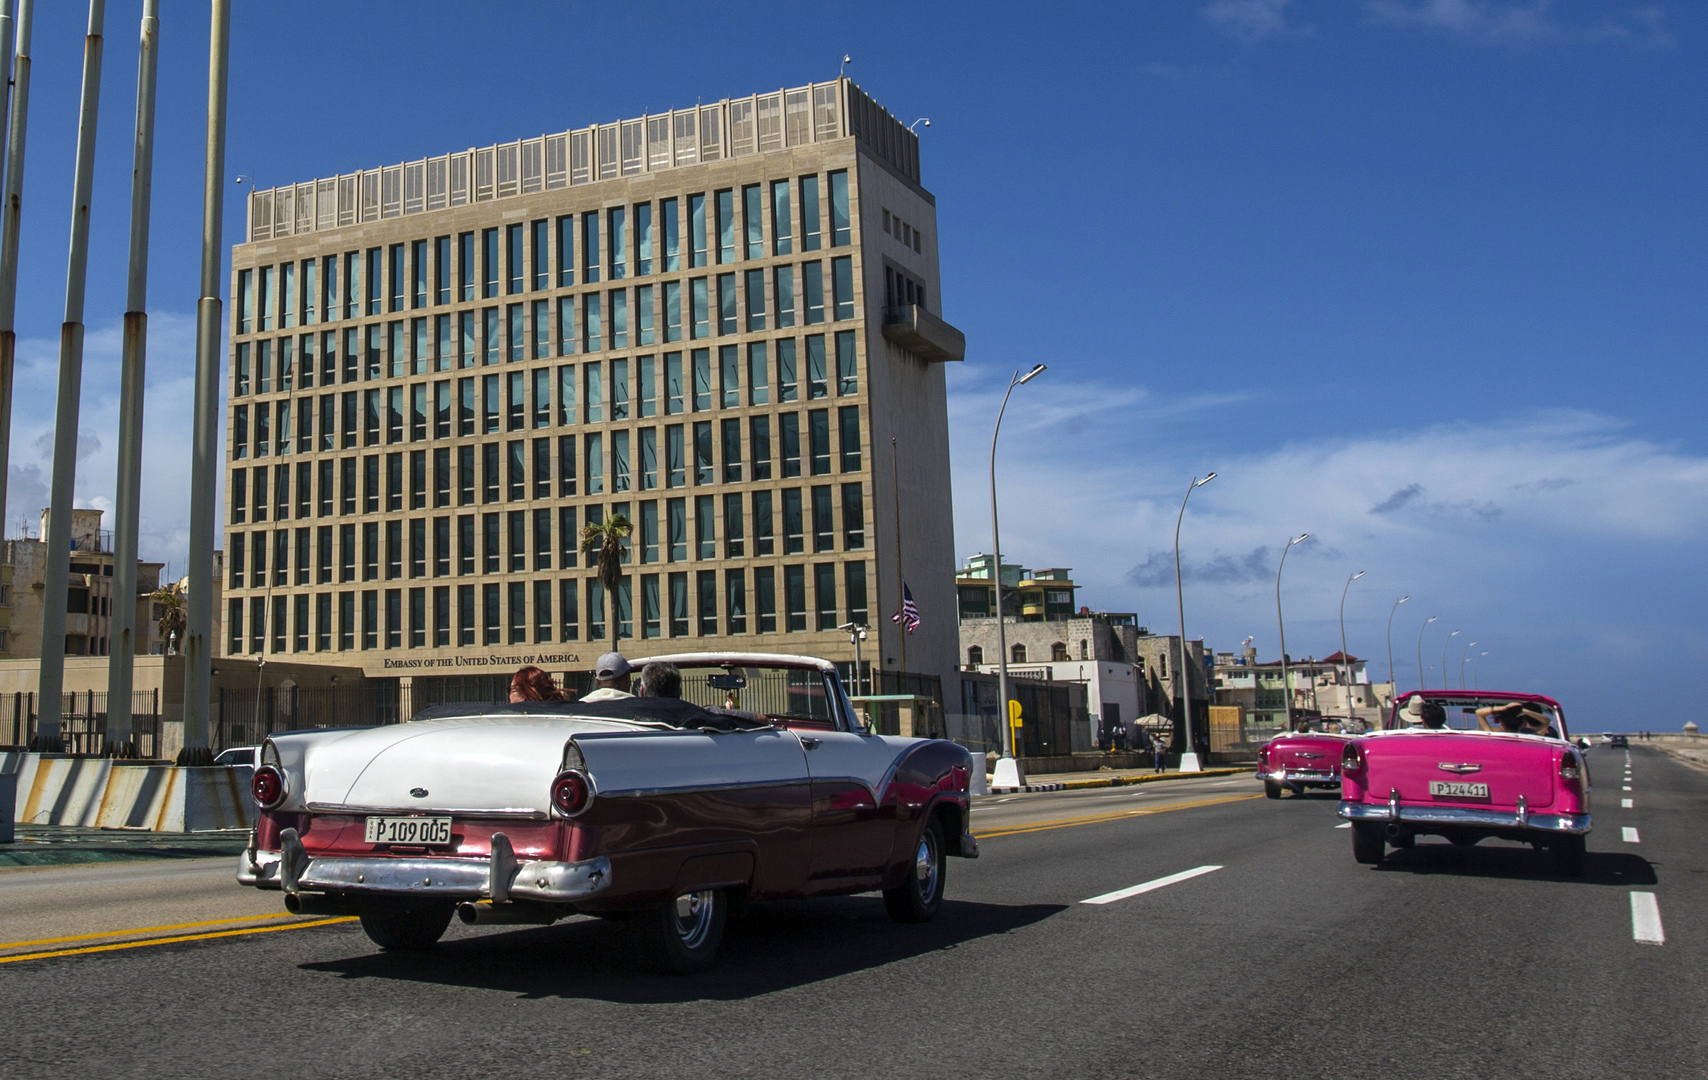 السفارة الأمريكية في هافانا تستأنف إصدار تأشيرات الهجرة للكوبيين